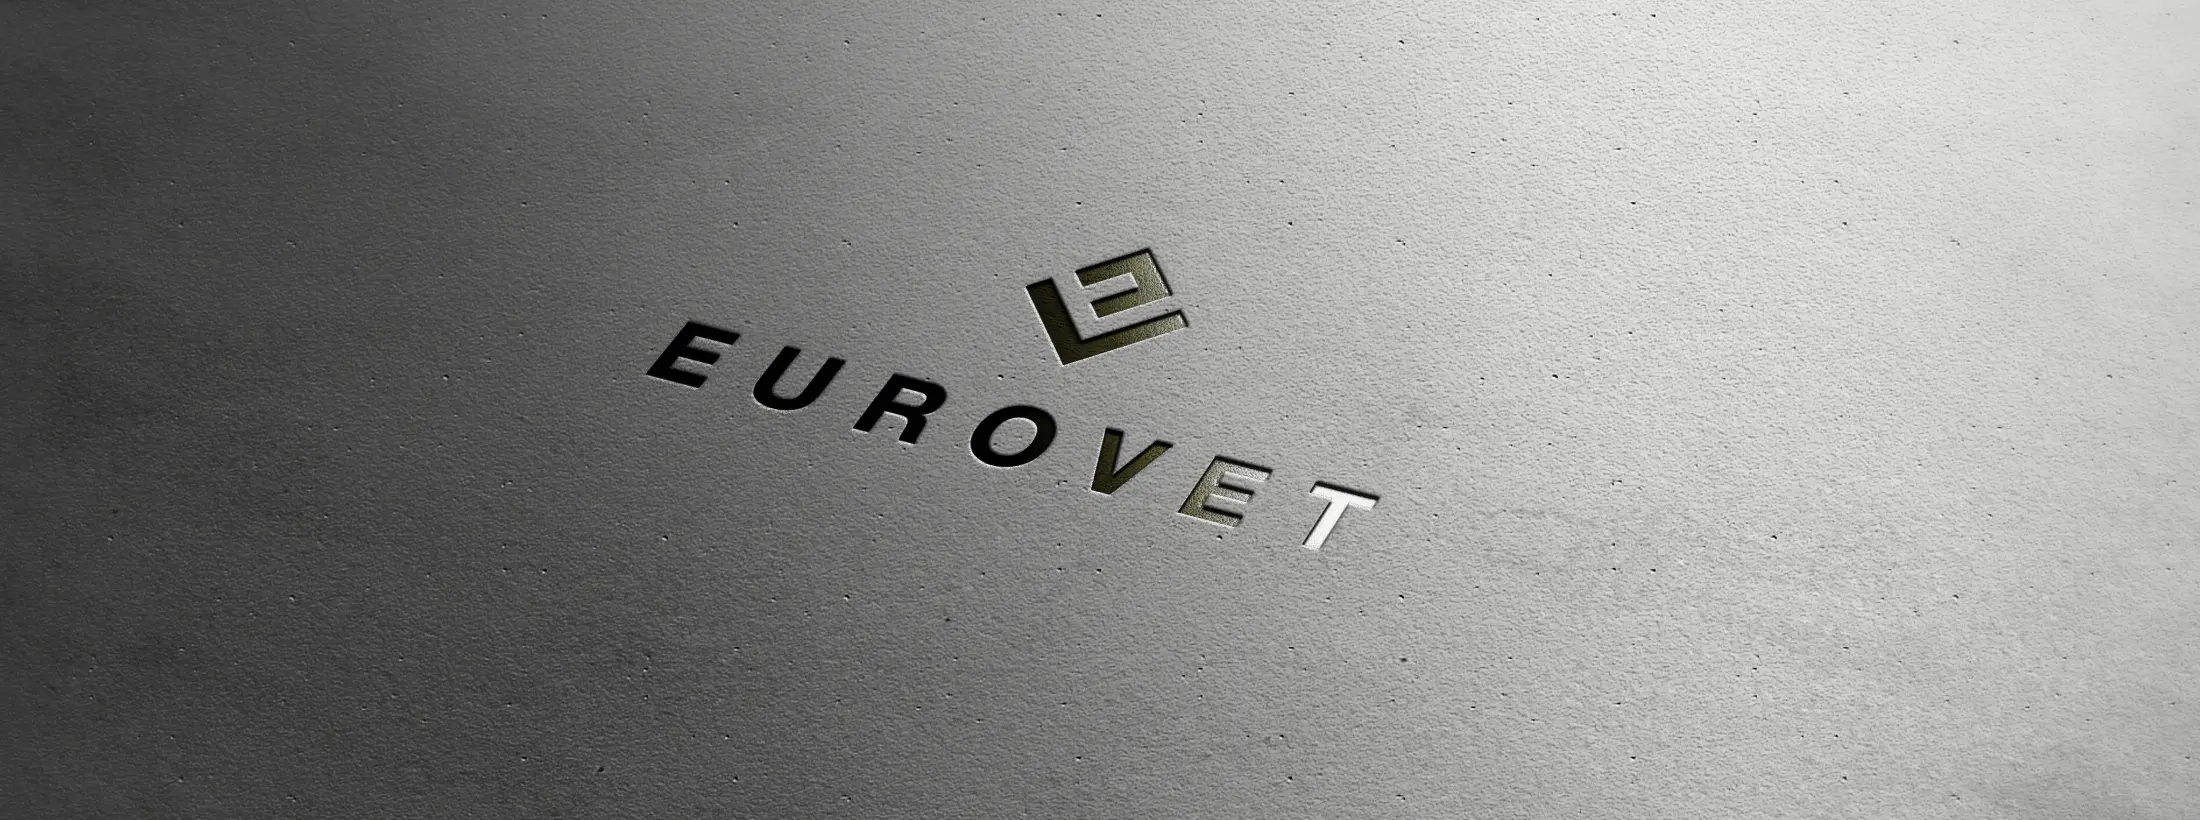 logo eurovet branding design phone identite visuelle osb communication